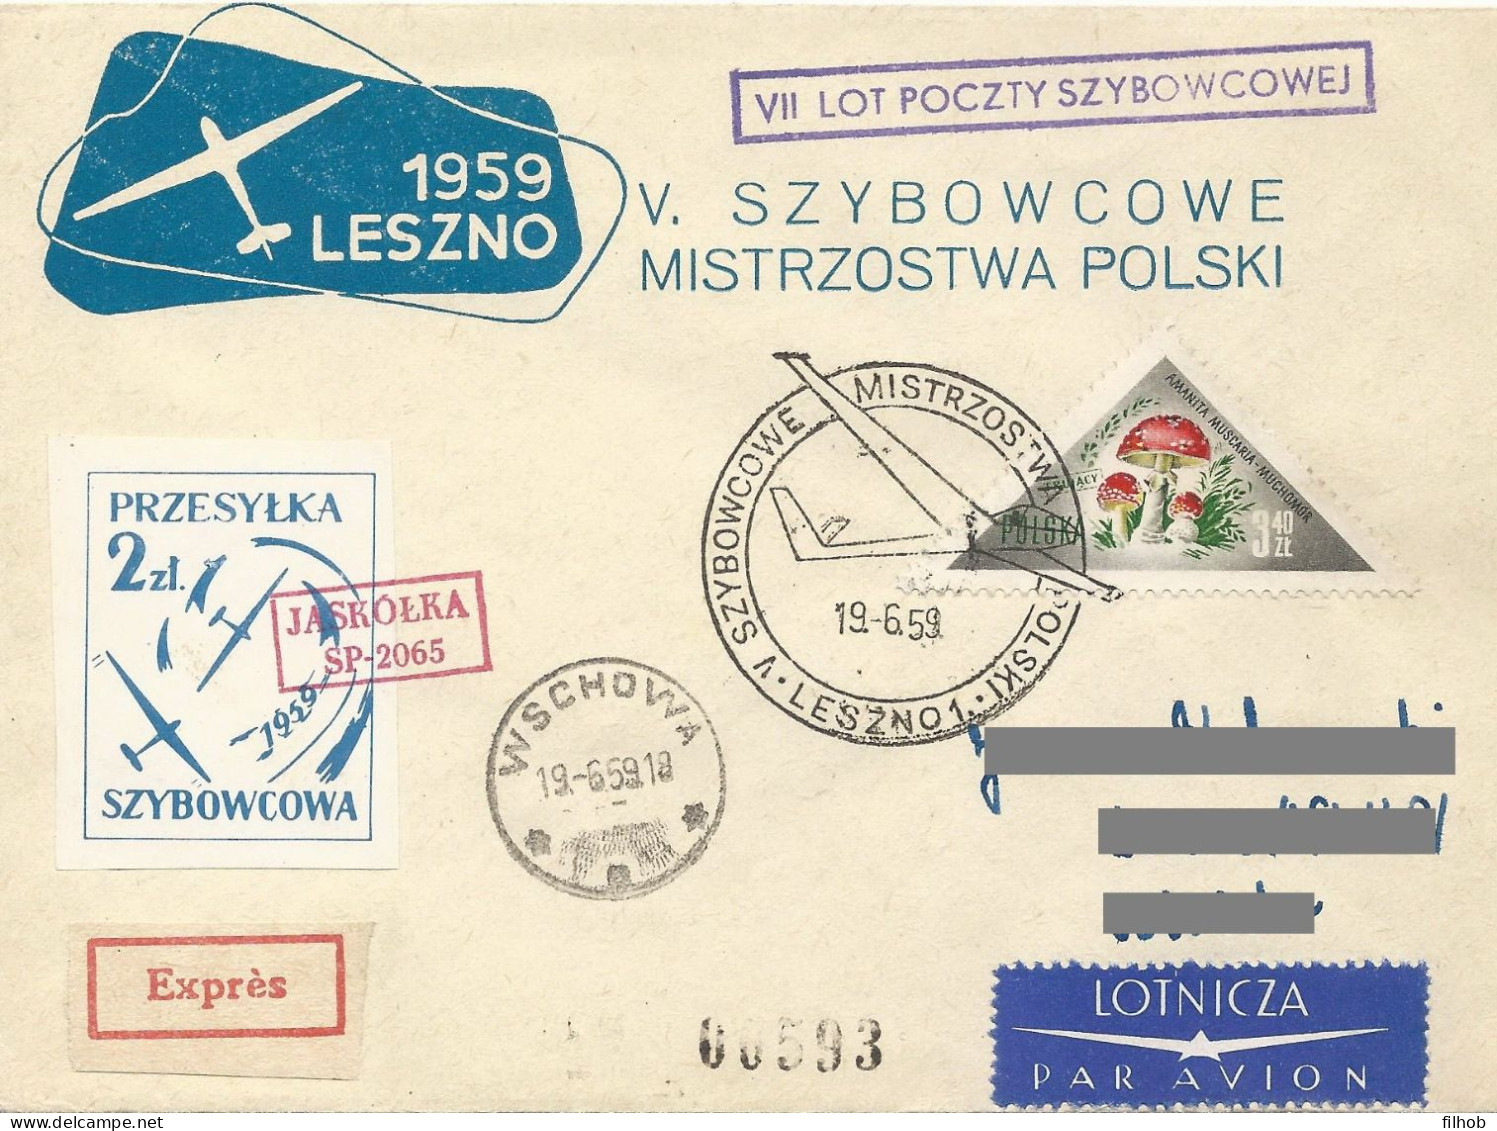 Poland Post - Glider PSZ.1959.lesz.05: Sport Leszno Polish Championships Jaskolka - Alianti